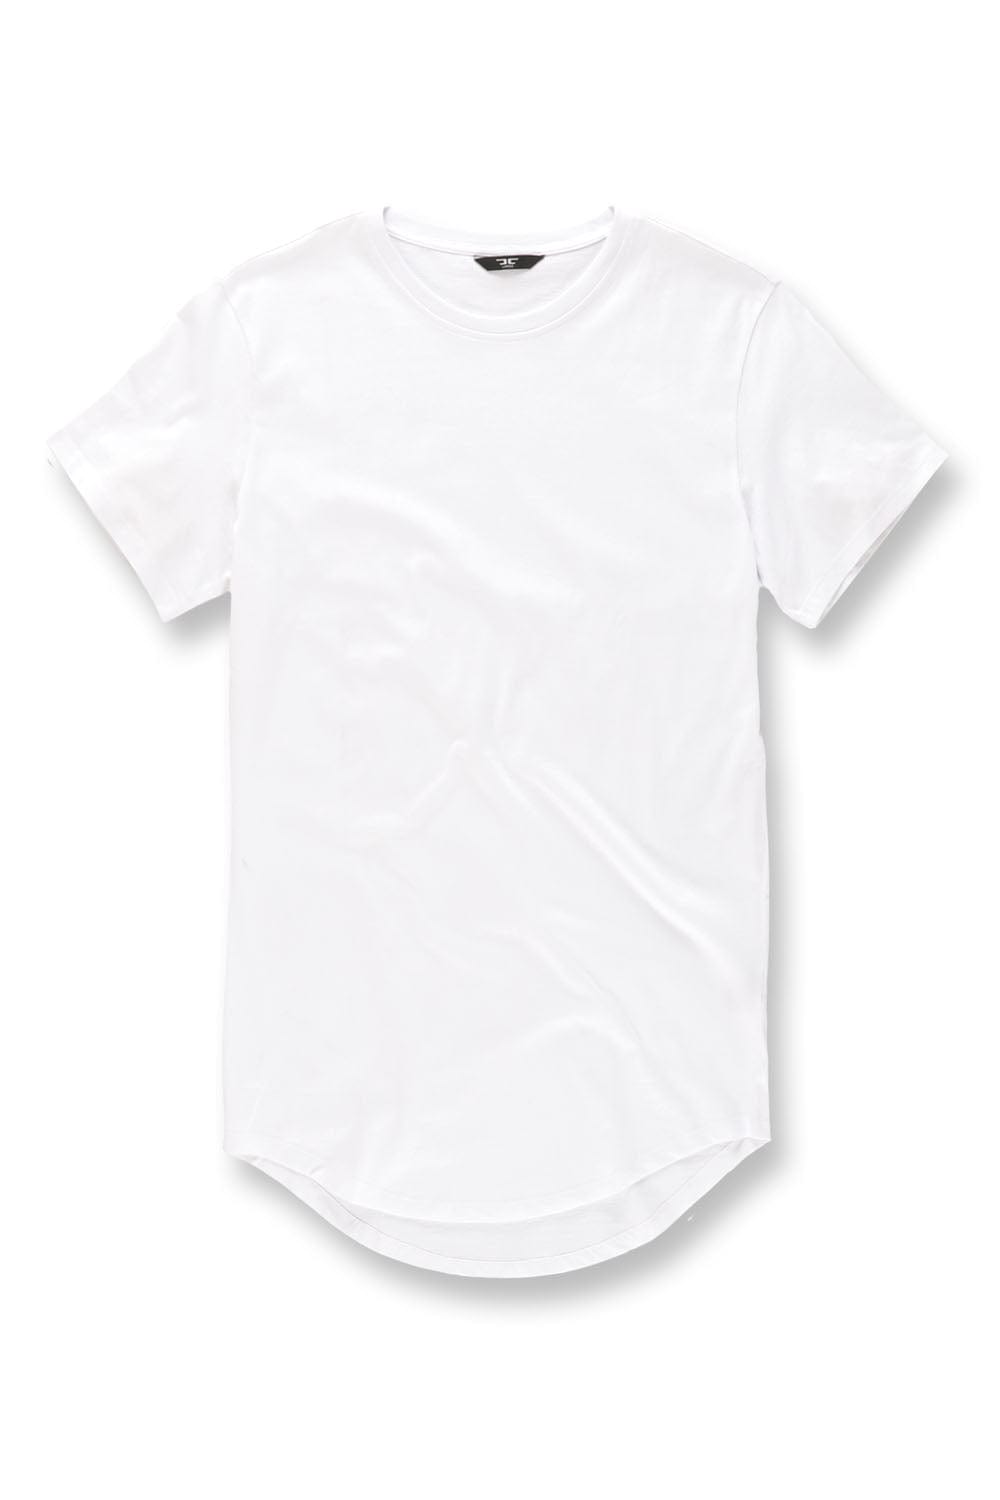 Big Men's Scallop T-Shirt - 4XL - JC Big Men